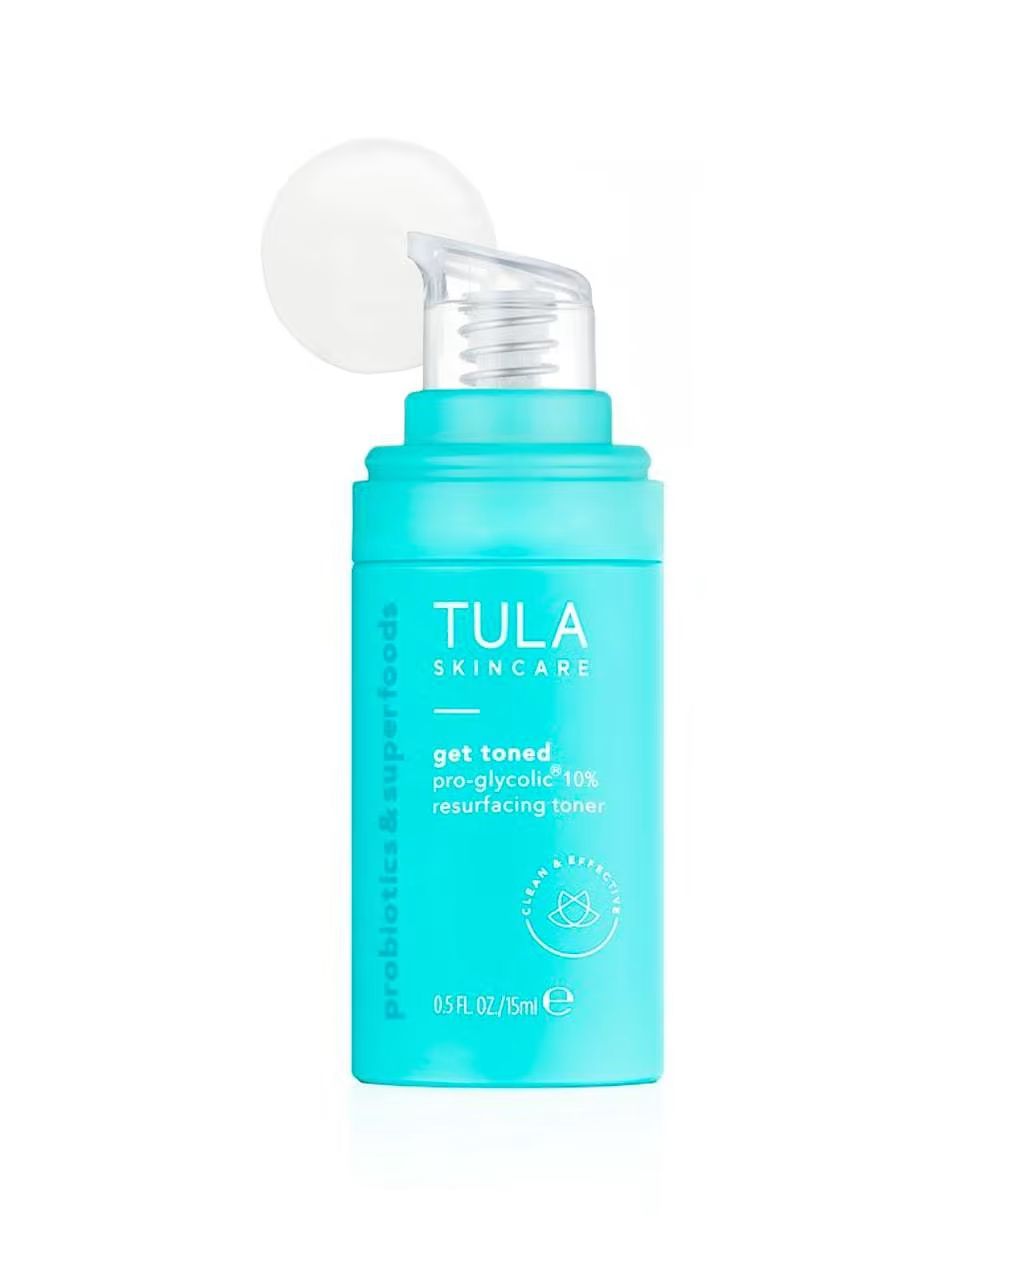 travel size pro-glycolic 10% resurfacing toner | Tula Skincare